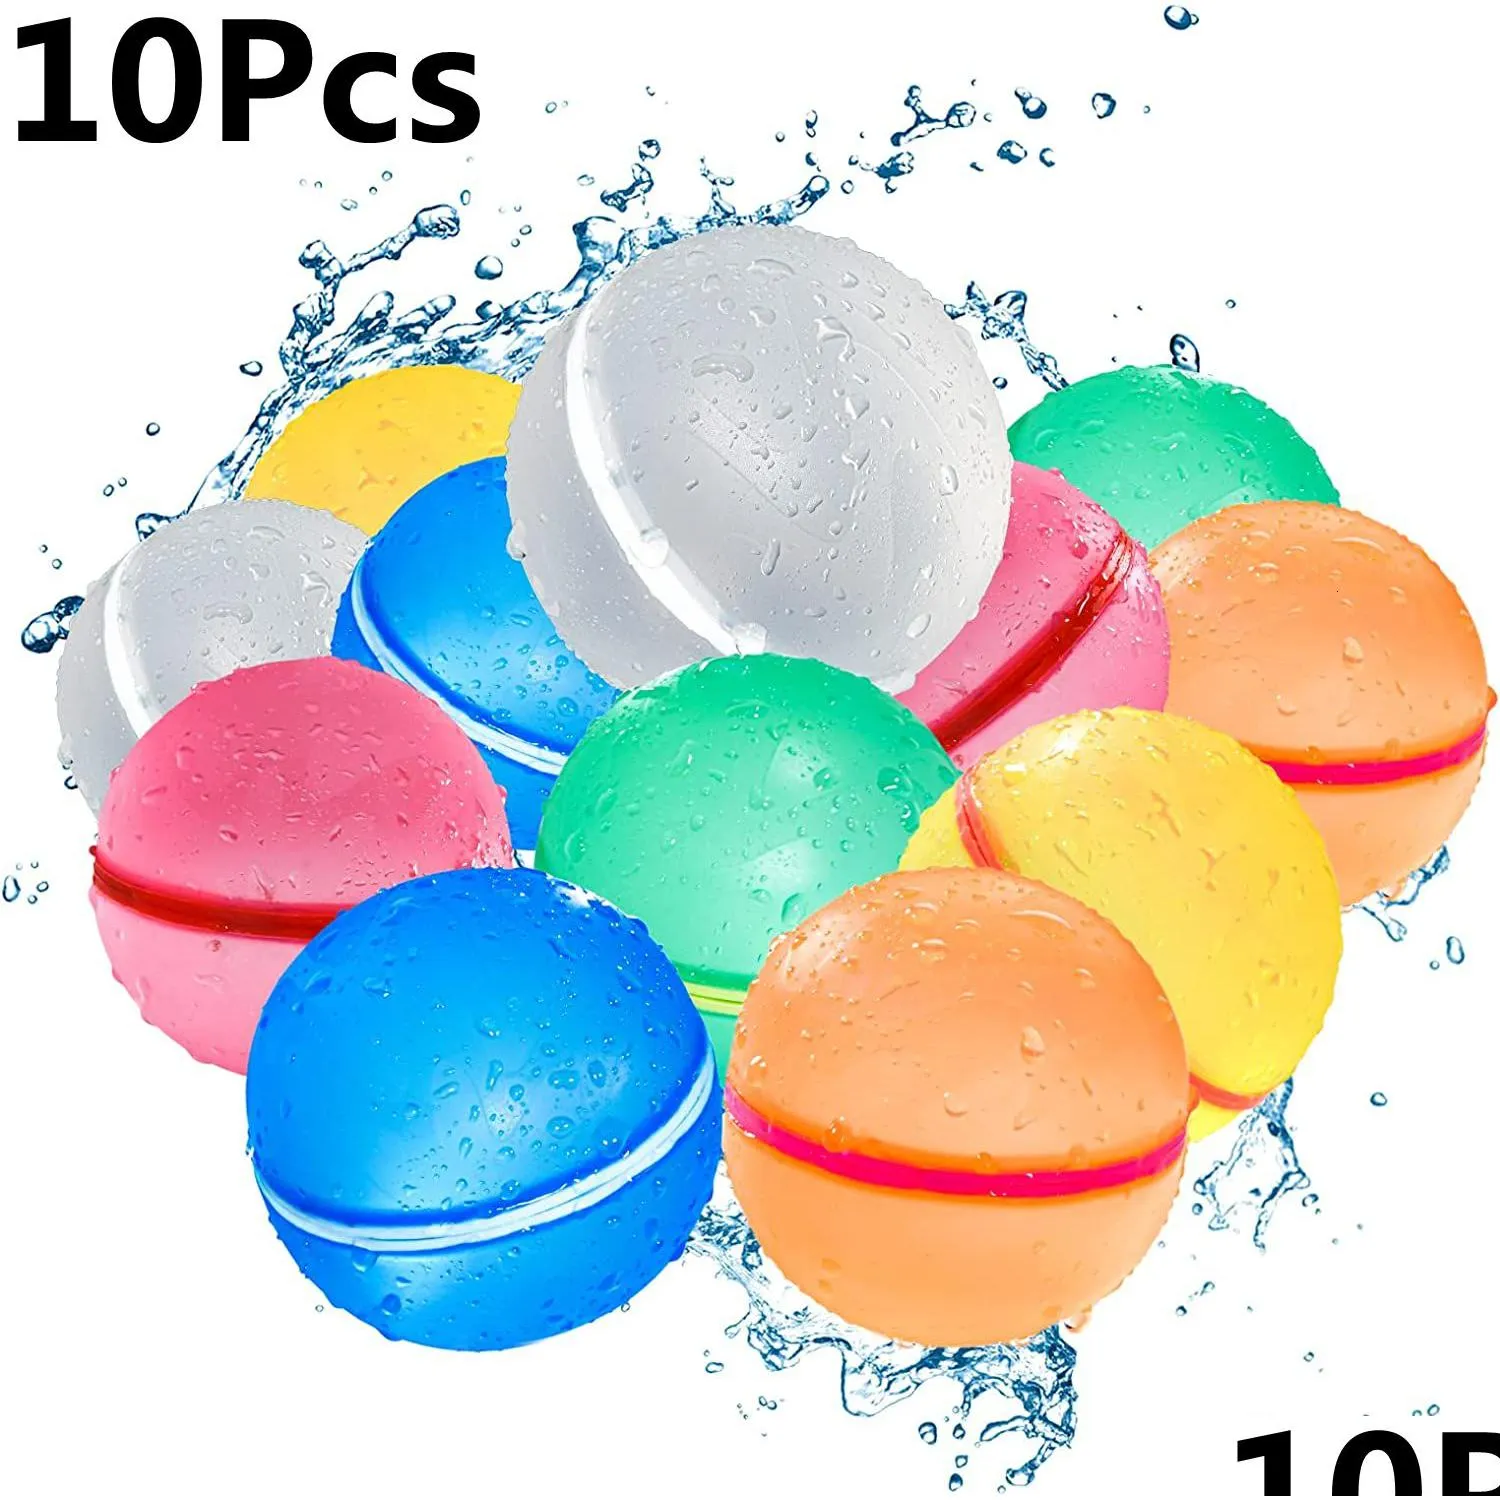 البالونات الحزبية 10pcs مغناطيسي ماء قابلة لإعادة الاستخدام الصيفية كرات الرش في الهواء الطلق شاطئ لعب ألعاب بركة ألعاب للأطفال